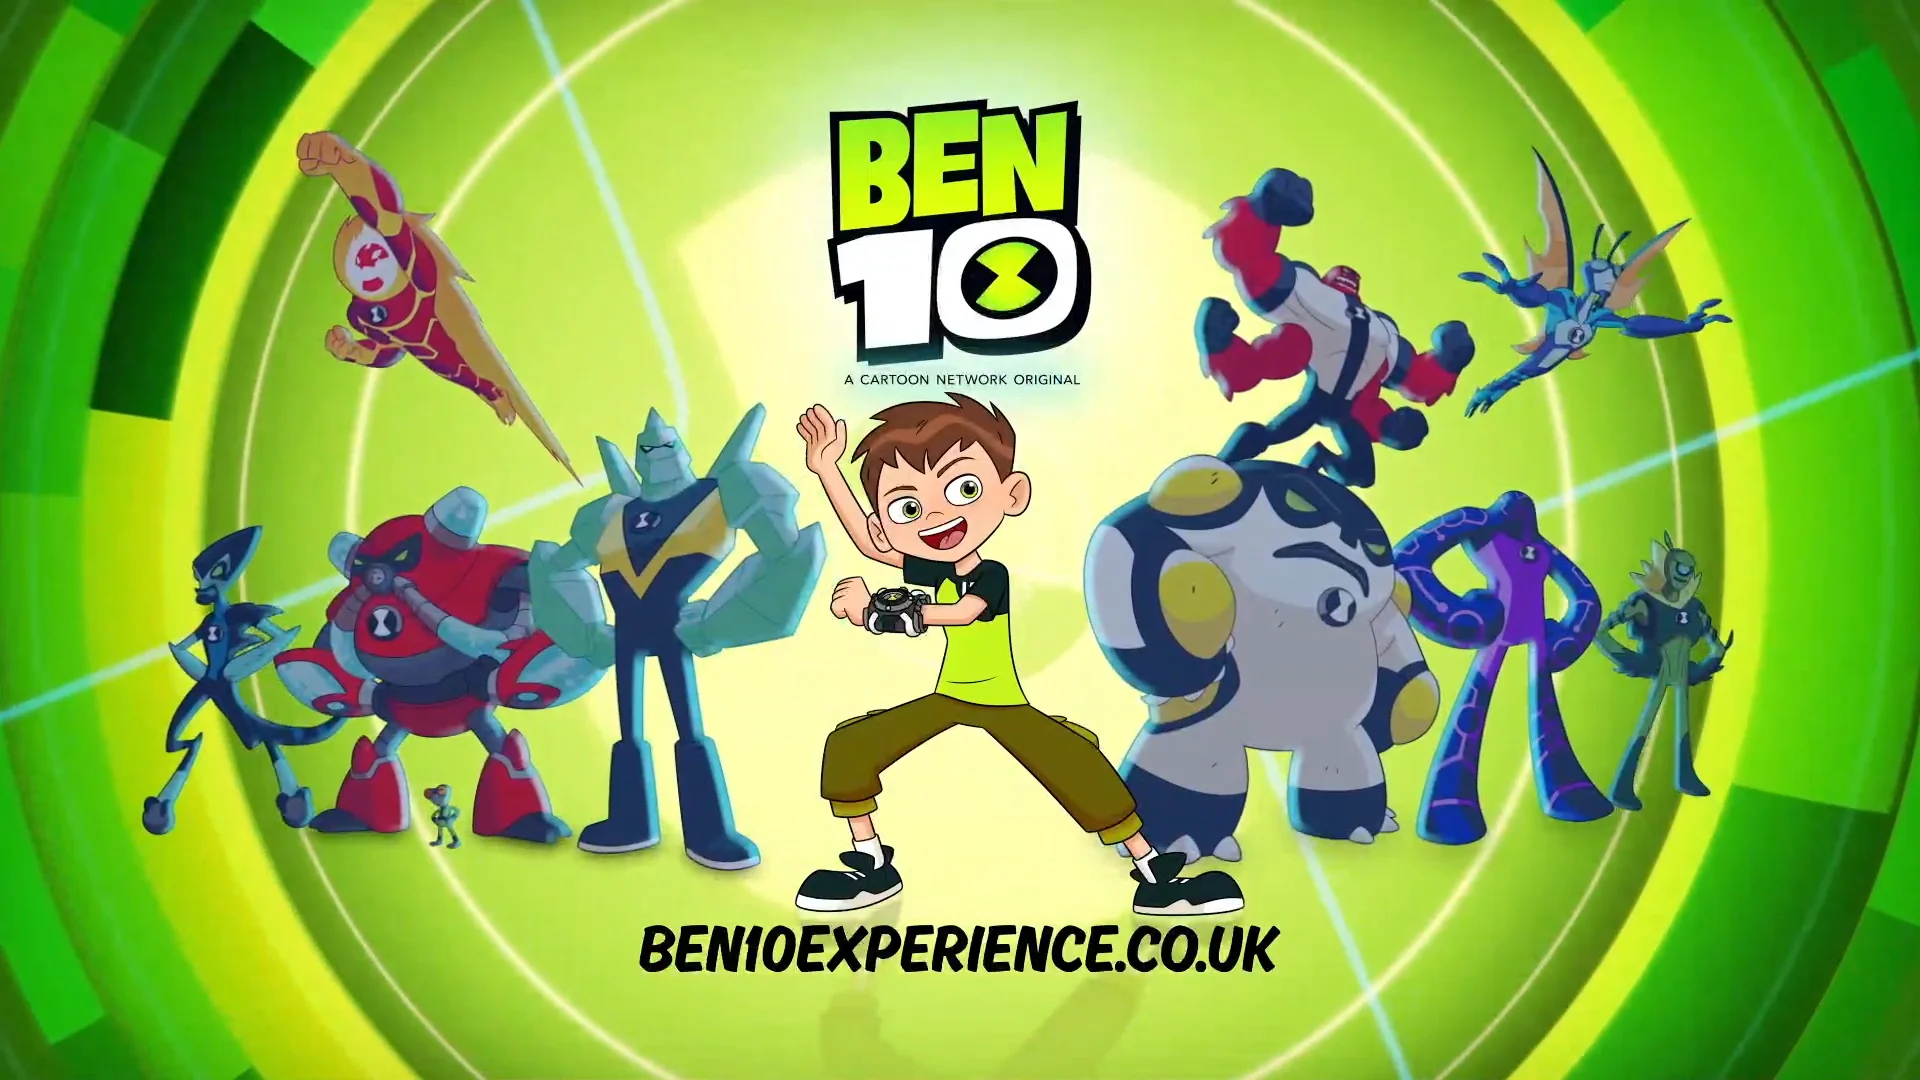 Ben 10 promo on Vimeo